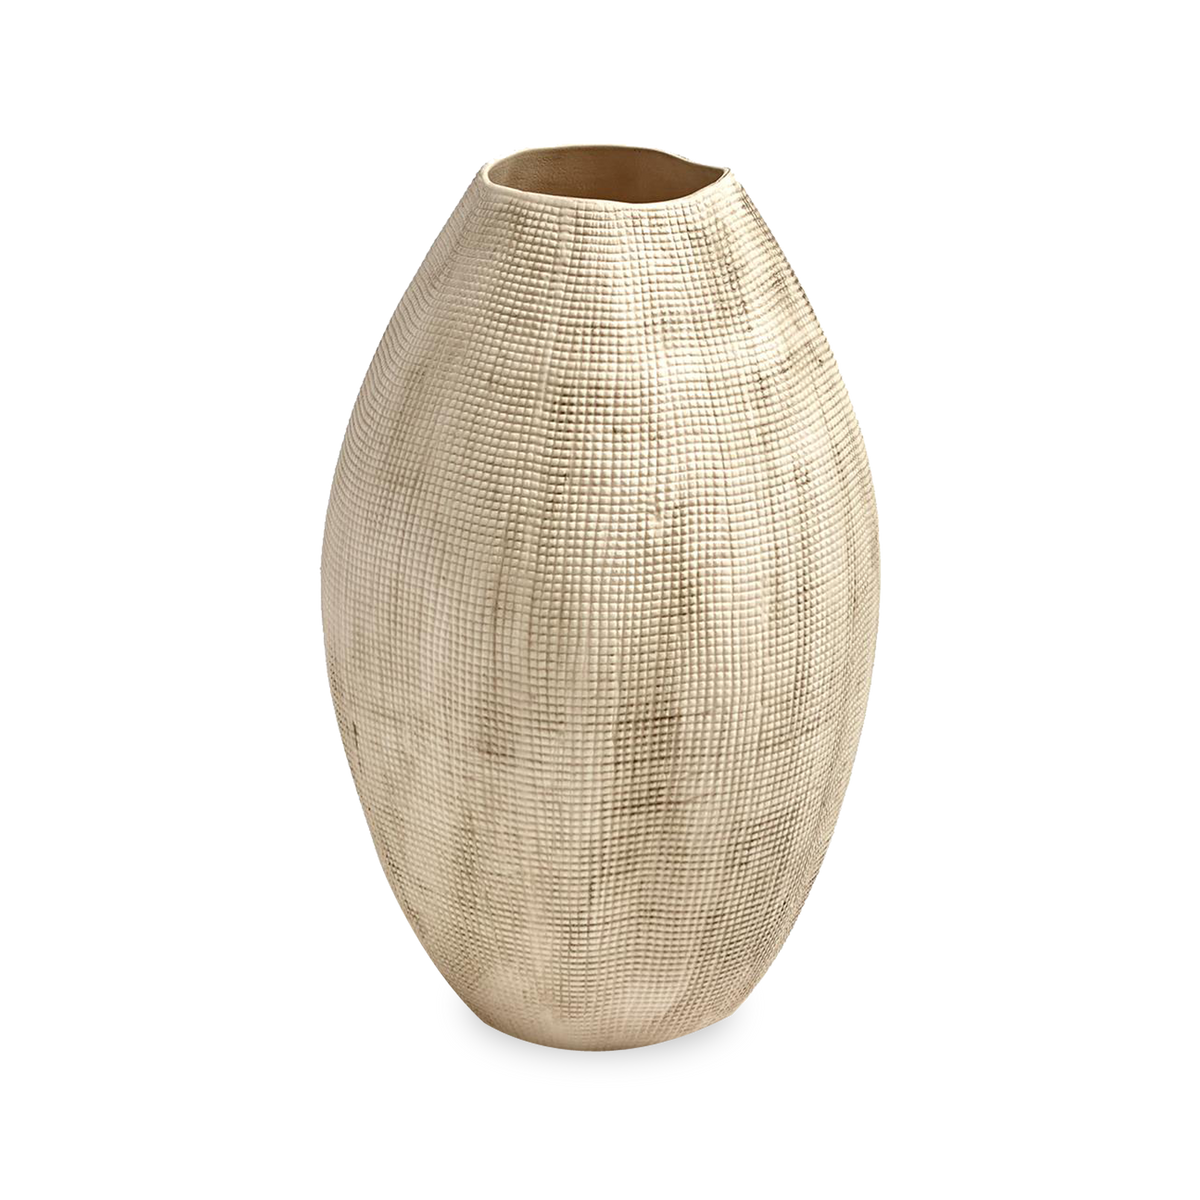 Textured Grid Vase